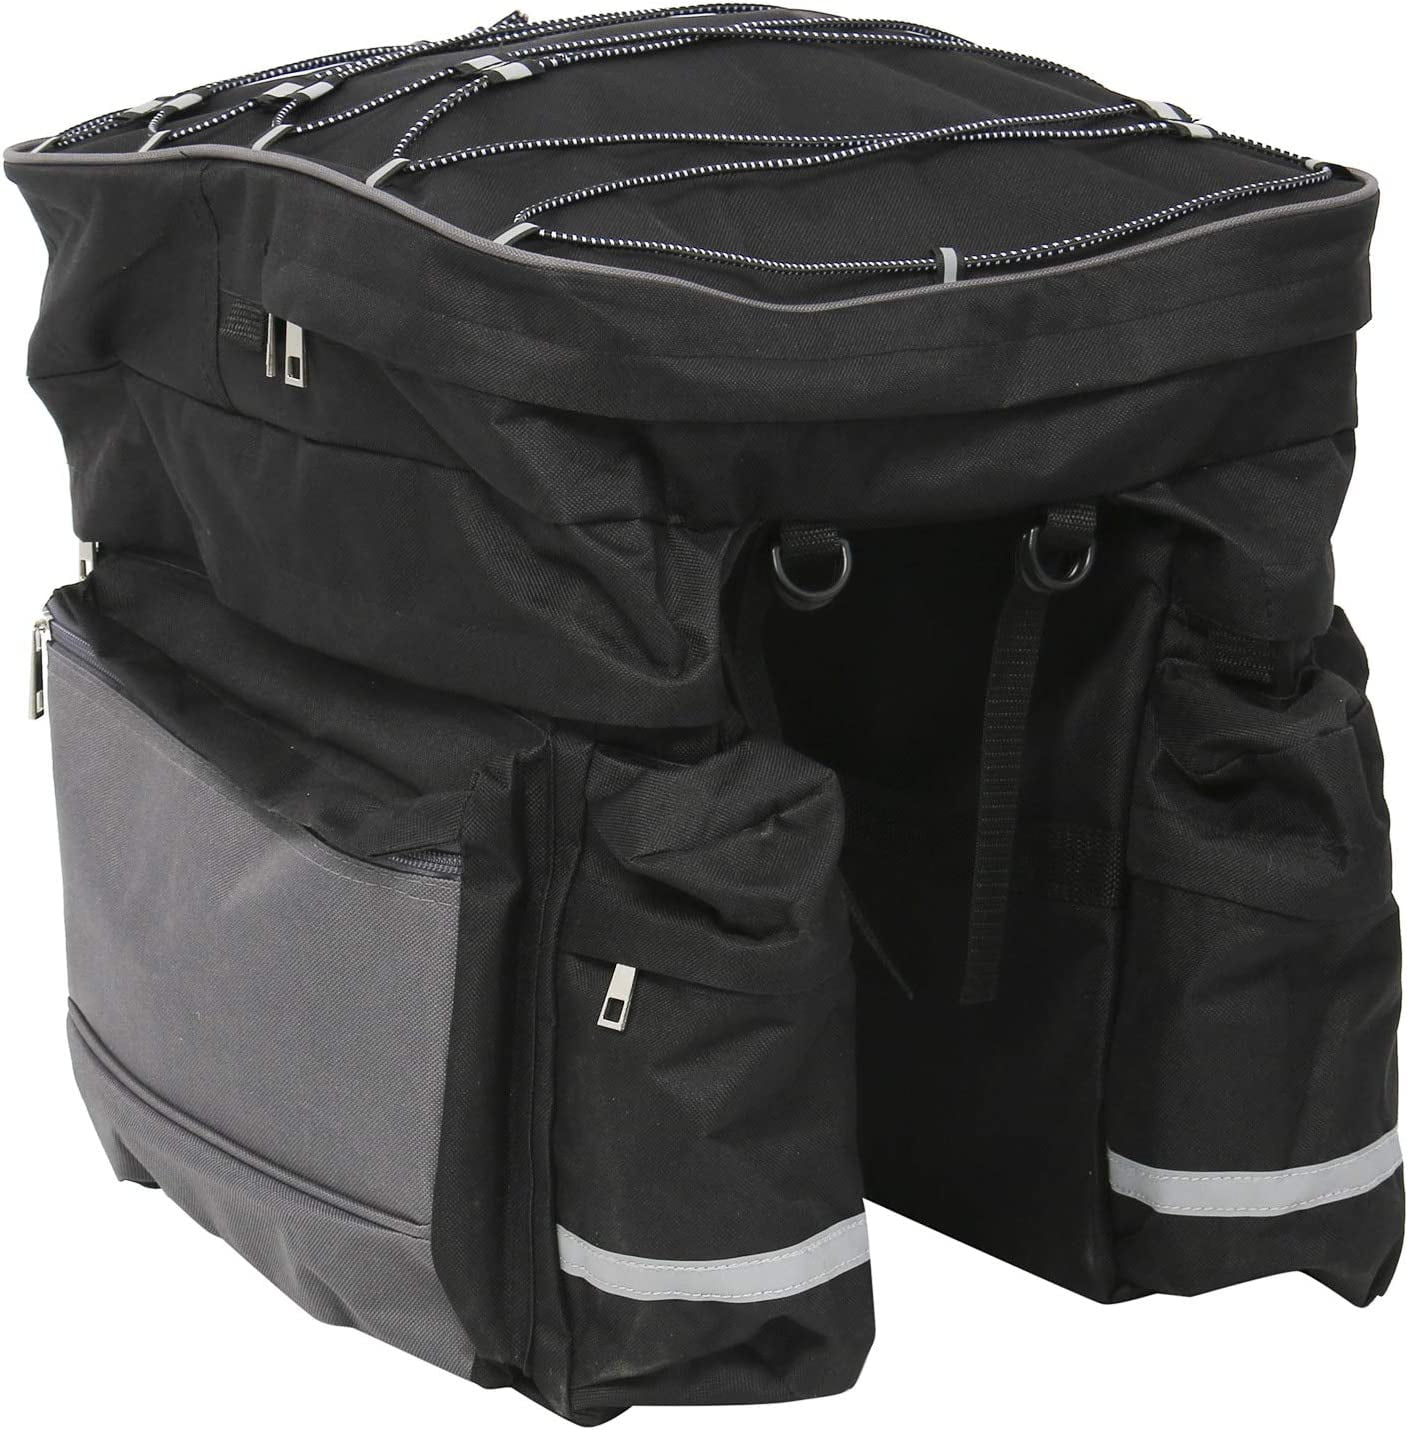 Bike Pannier Bag Waterproof, 68L large Capacity Bicycle Bags,3 in 1 ...